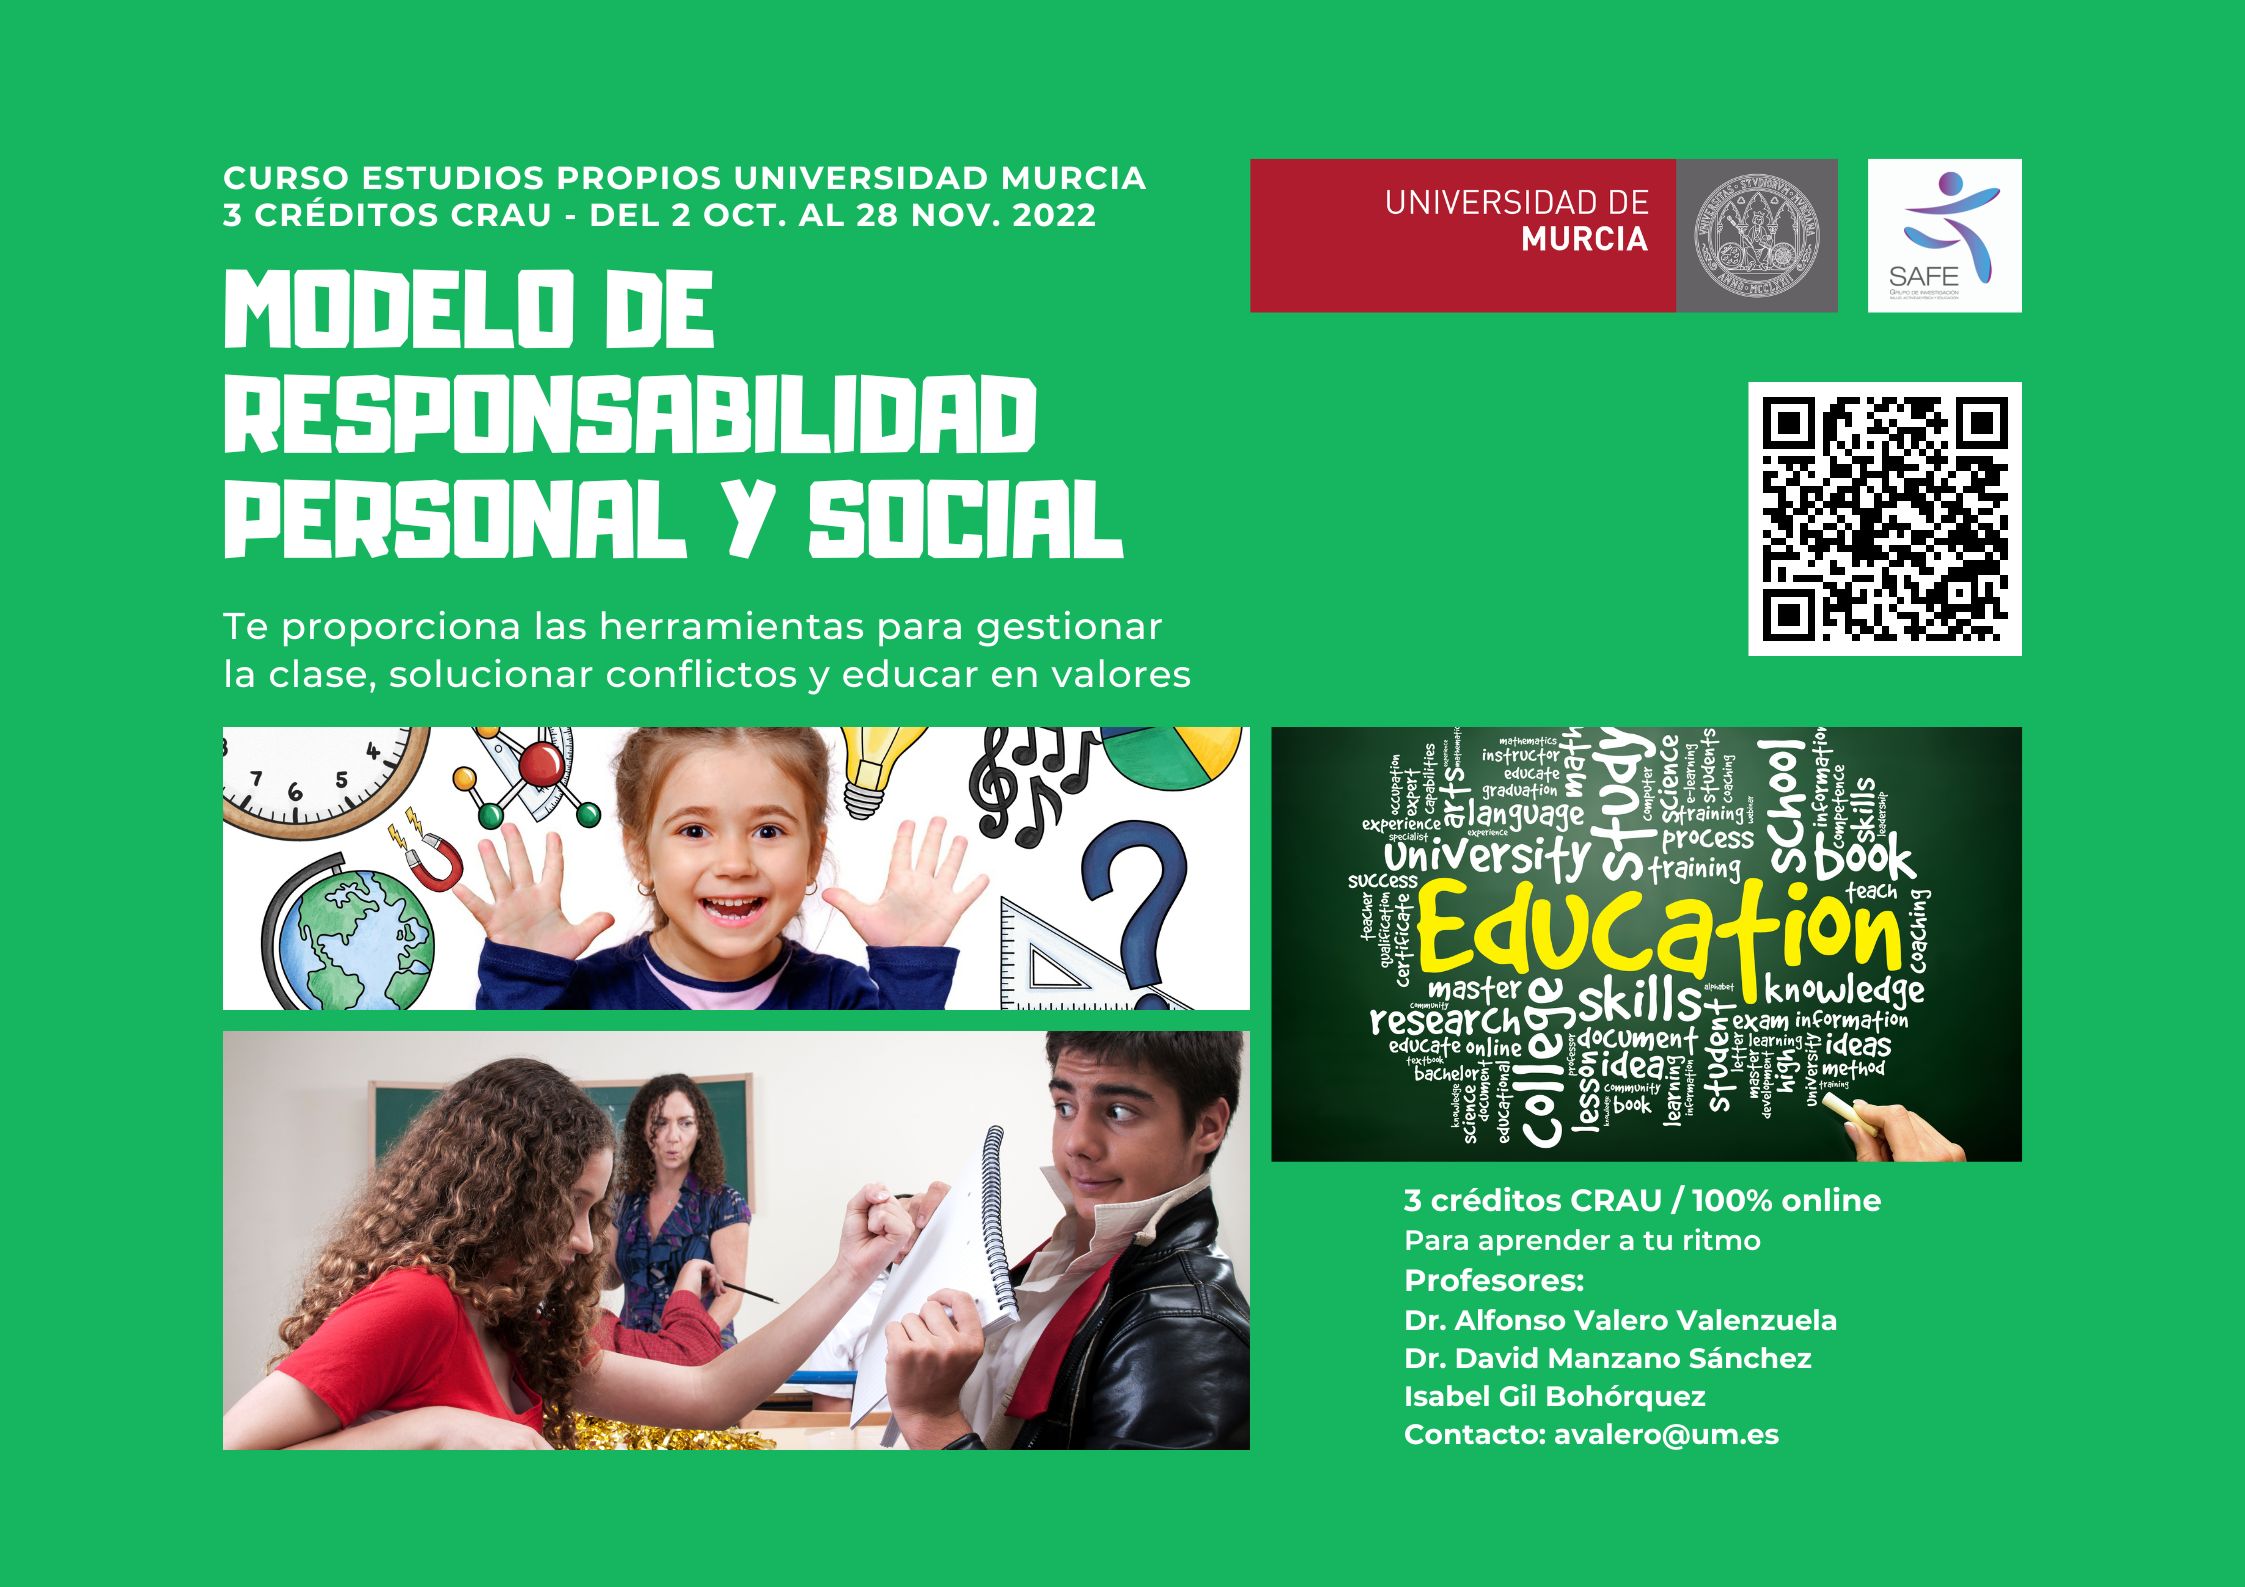 Información sobre el curso de Metodologías educativas, el Modelo de Responsabilidad Personal y Social. 3 CRAU, 100% online.